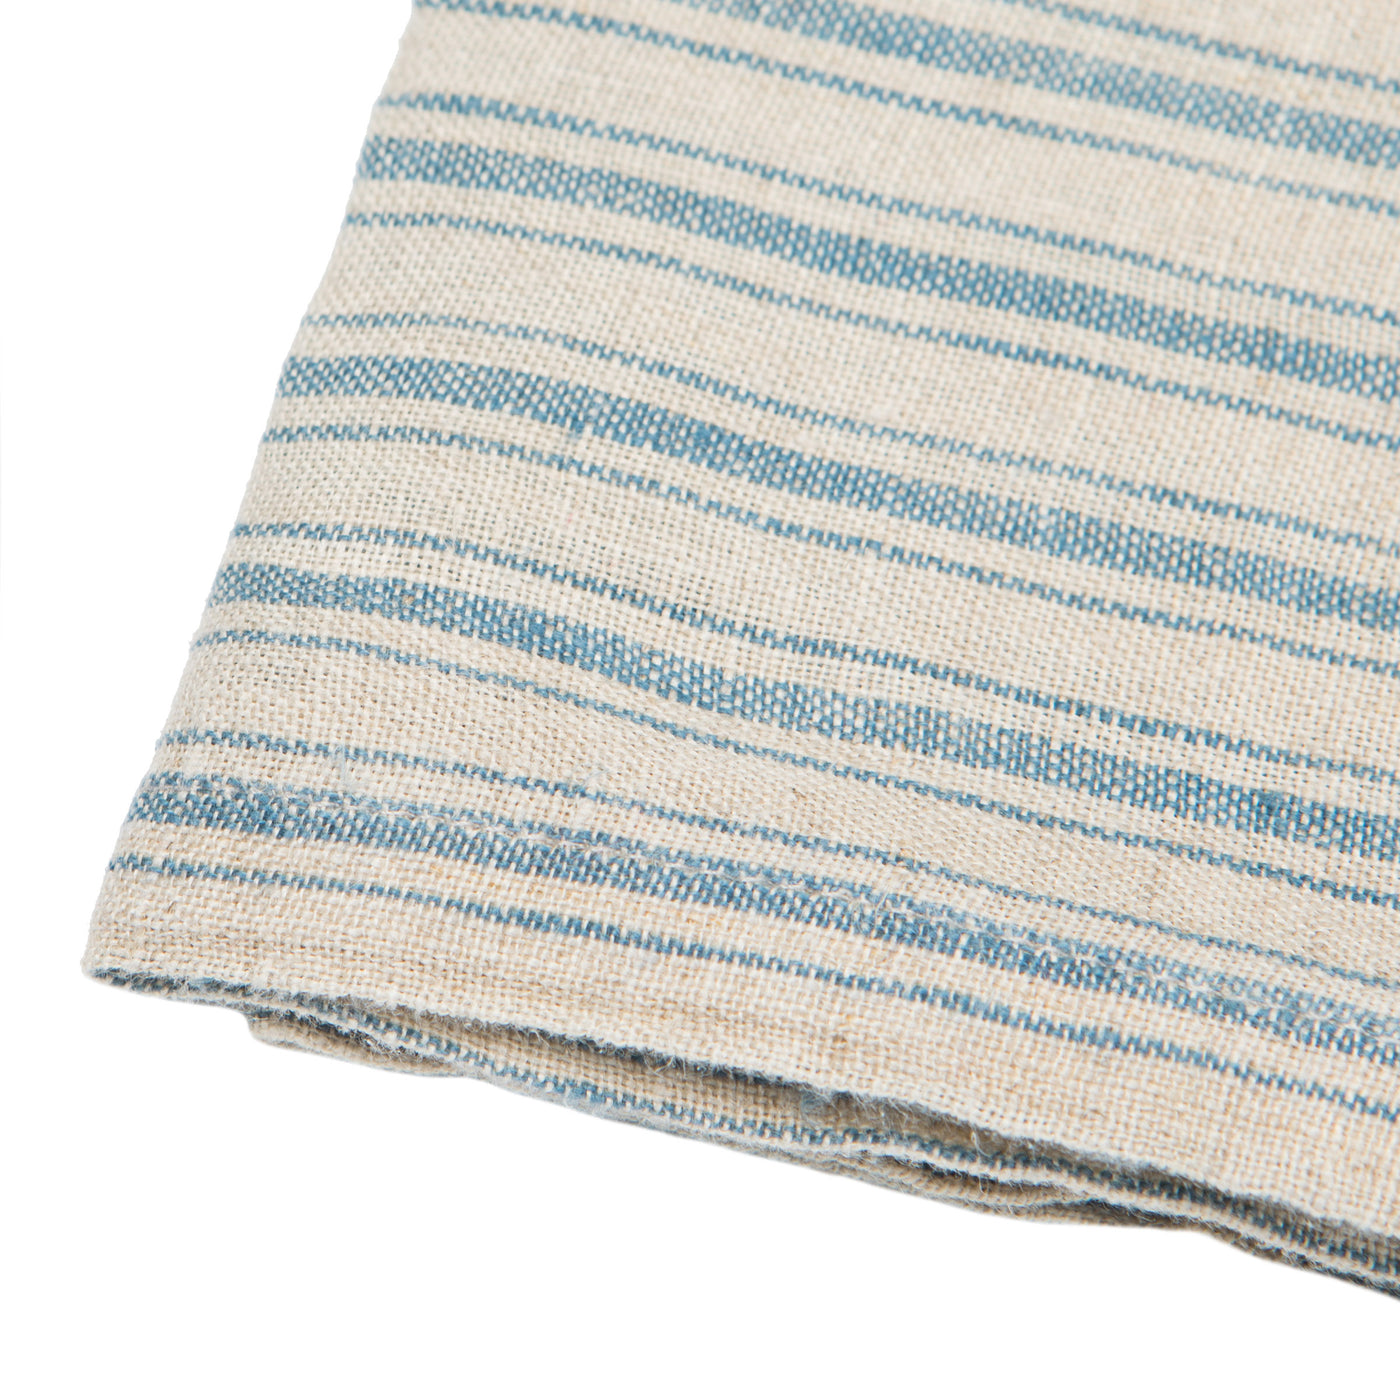 Boat Stripe Linen  Kitchen Towels Natural & Blue, Set of 2